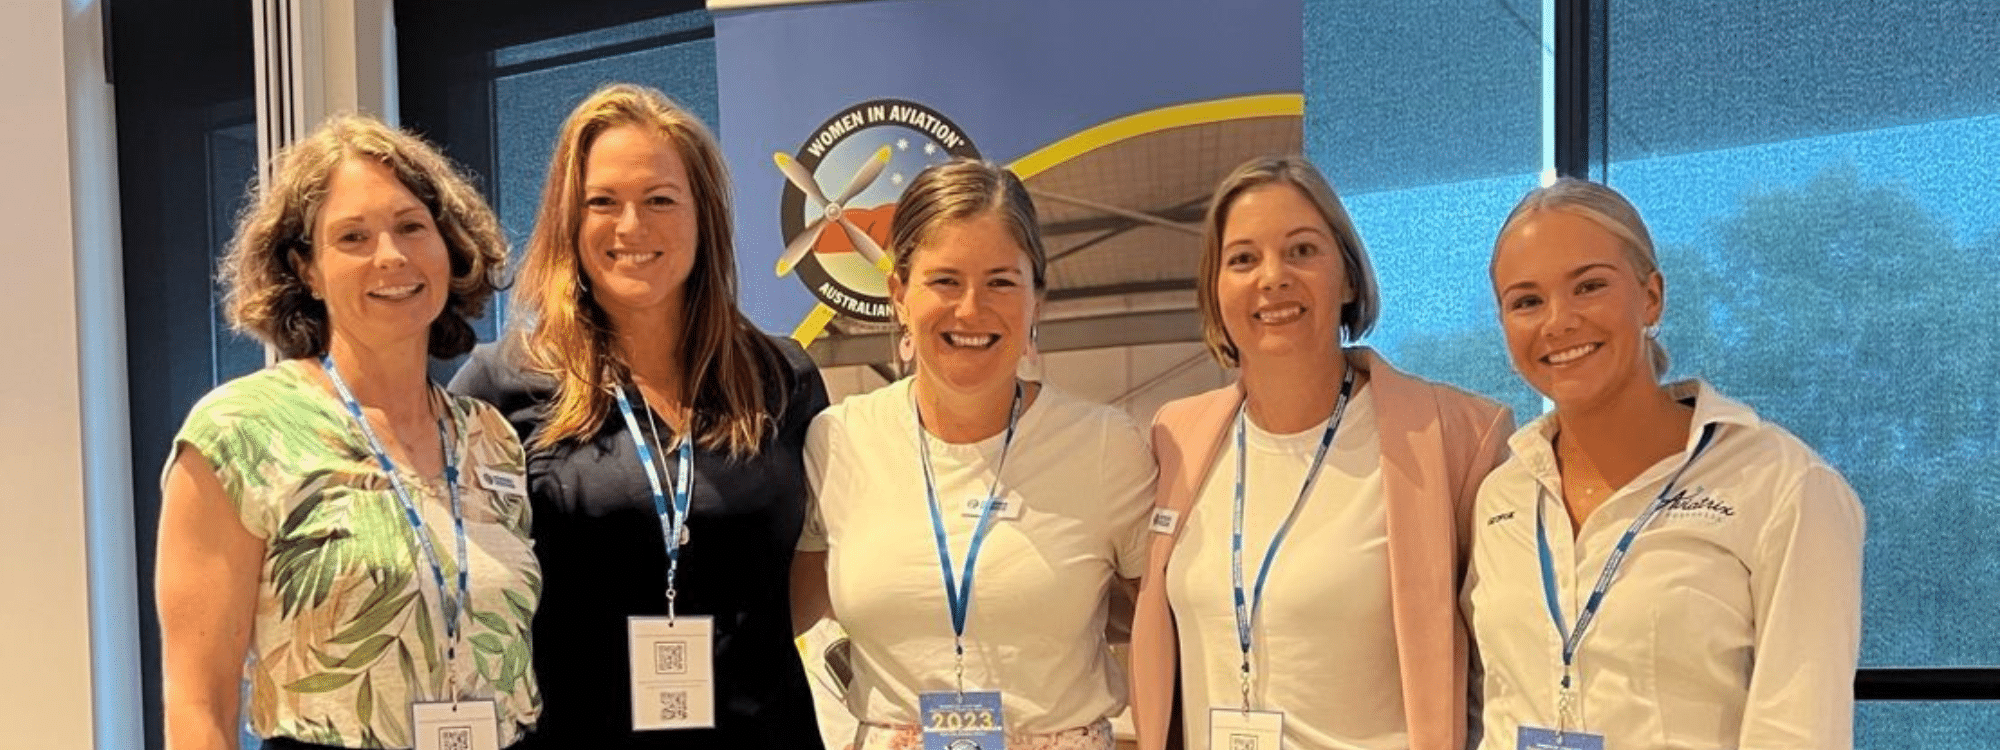 Five happy women in the Women in Aviation 2023 Scholarship Program